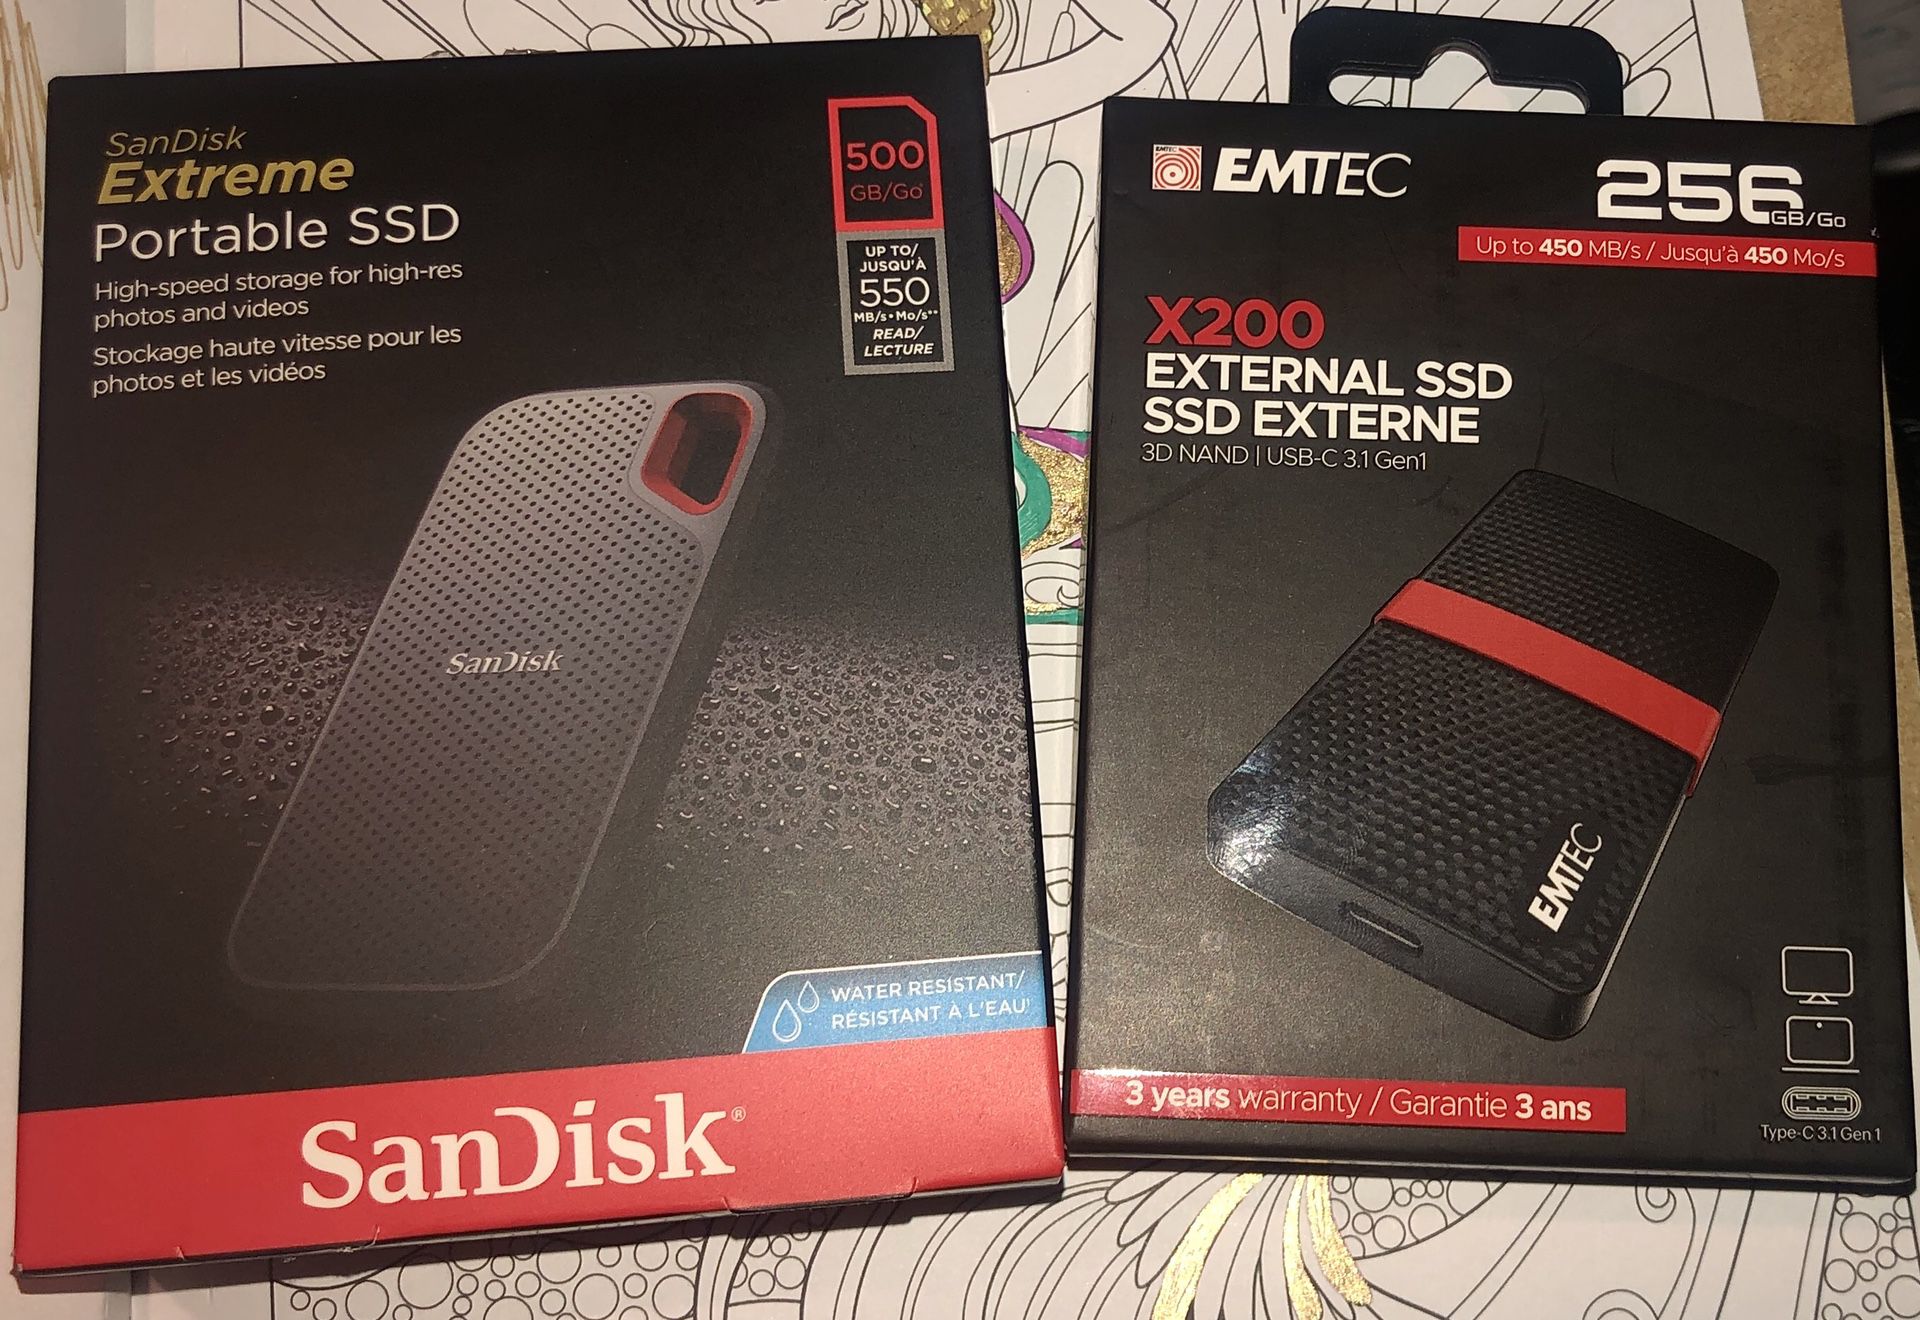 SanDisk Portable SSD & EMTEC External SSD